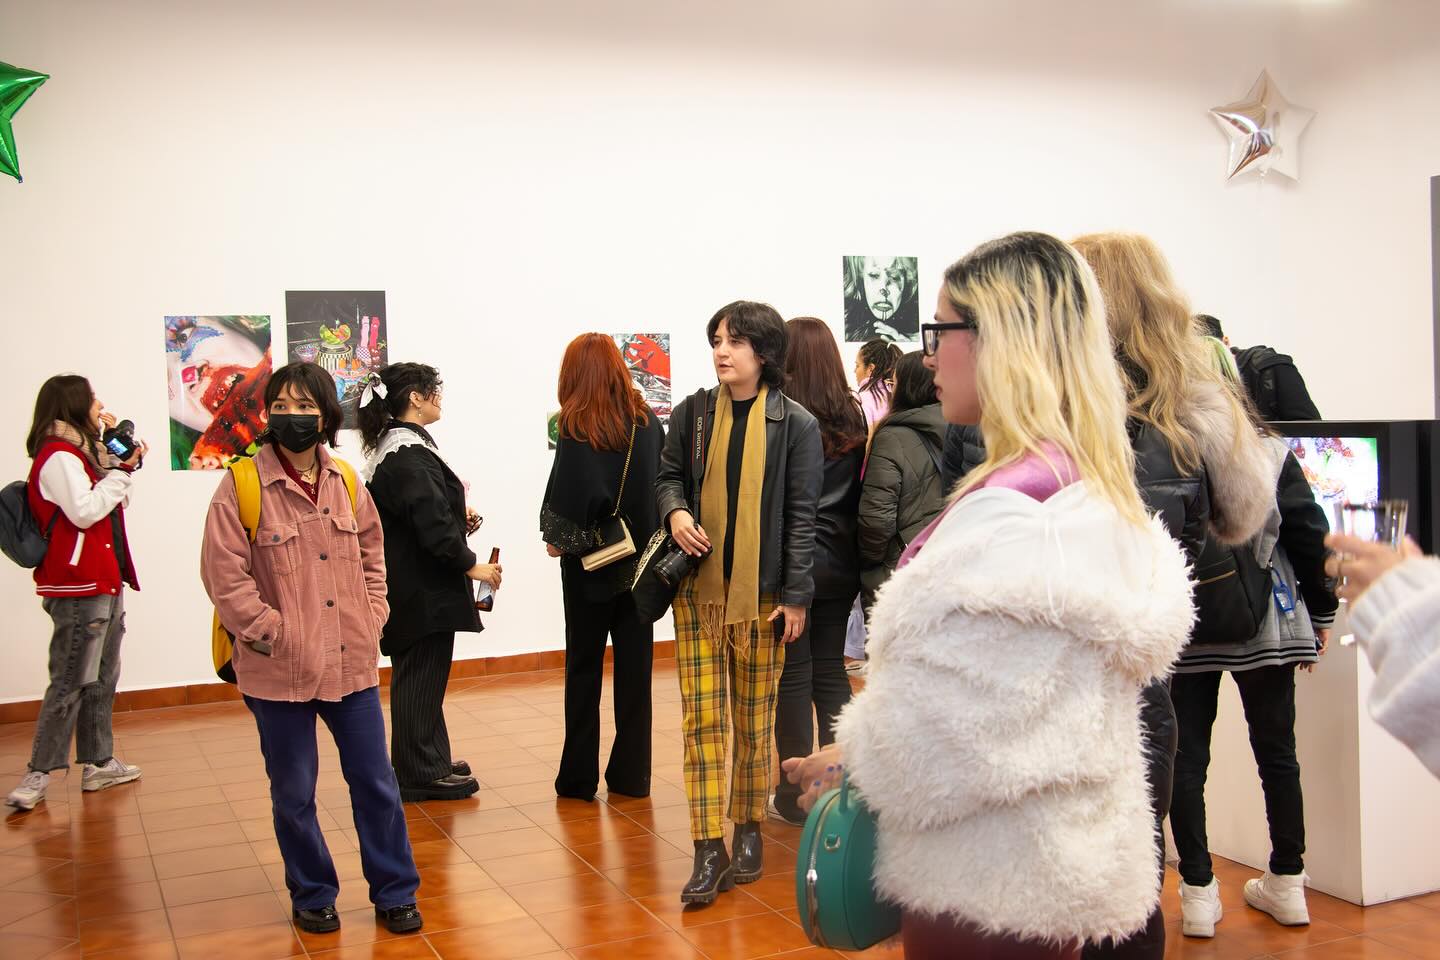 Visitantes de diversos estilos y orígenes entablan conversaciones en una exposición de arte vibrante, rodeados de diversas obras de arte.